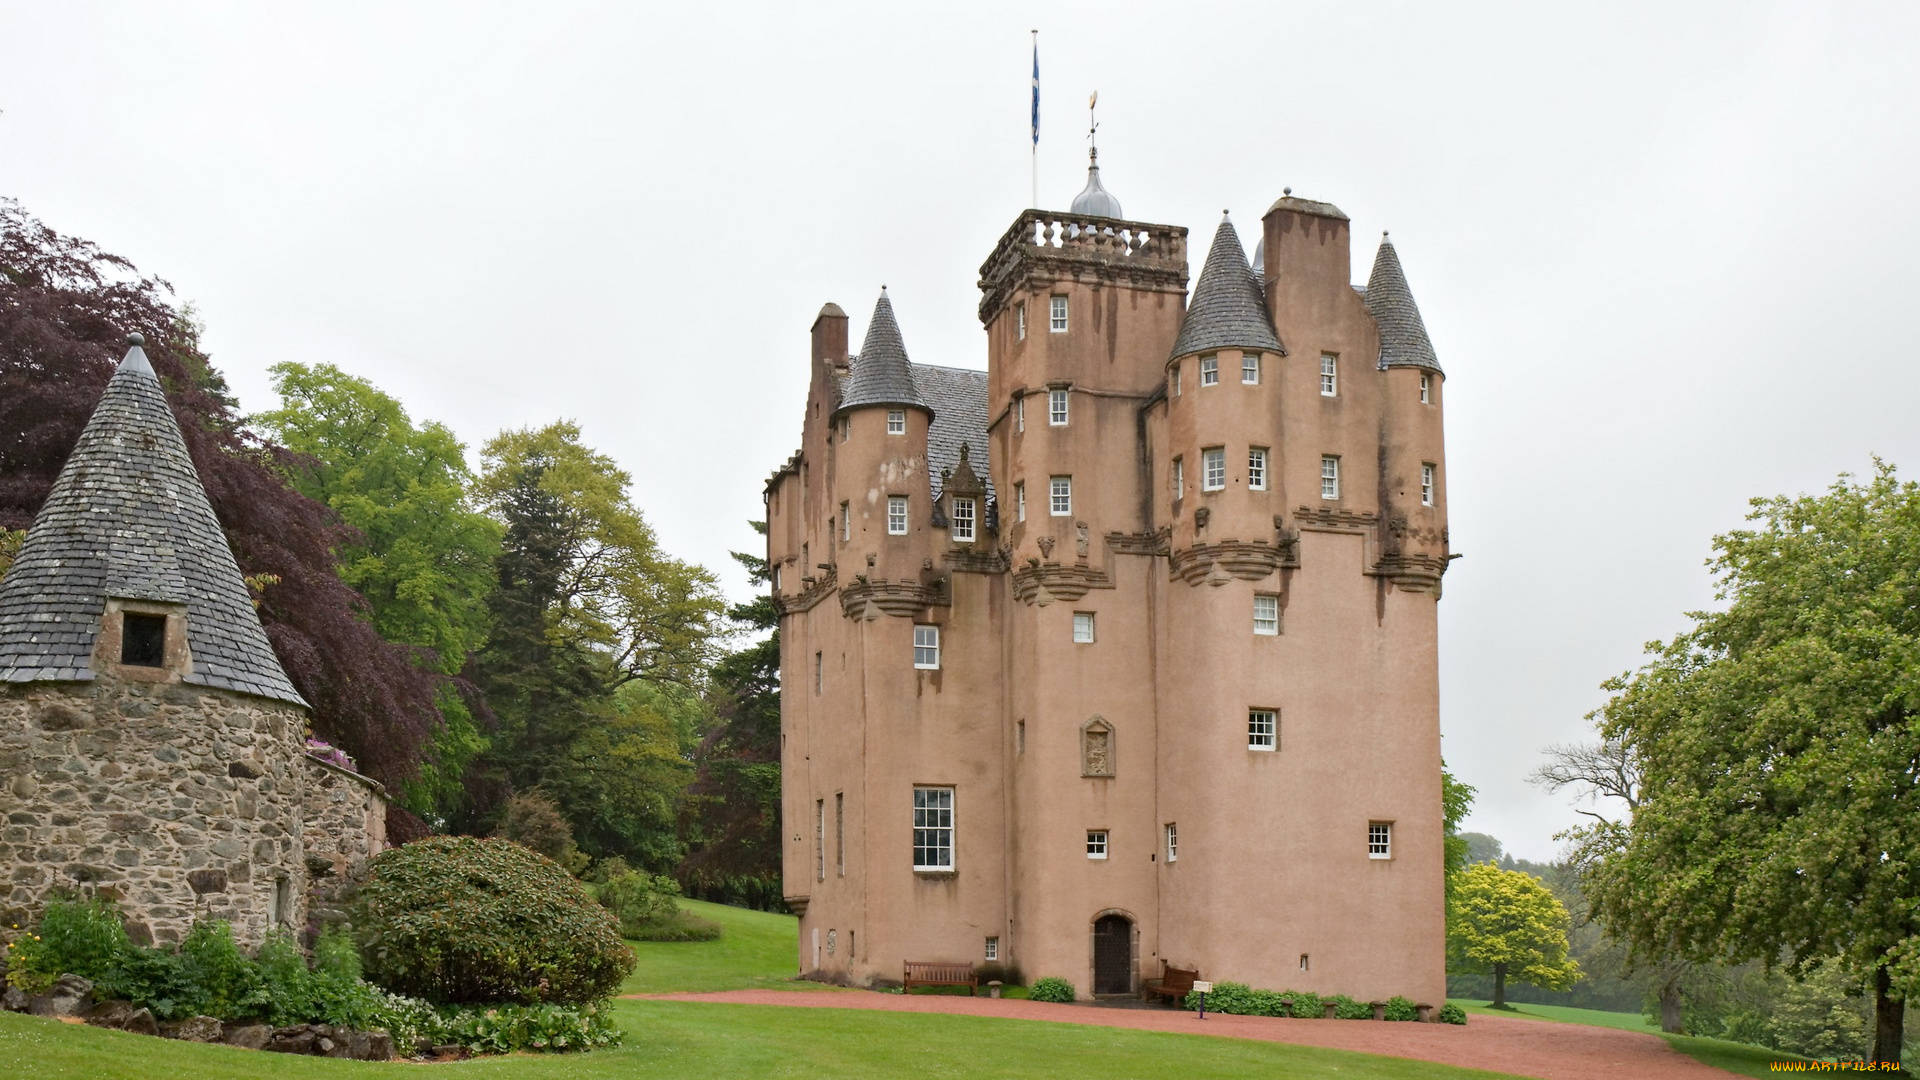 craigievar, castle, scotland, города, дворцы, замки, крепости, деревья, башни, замок